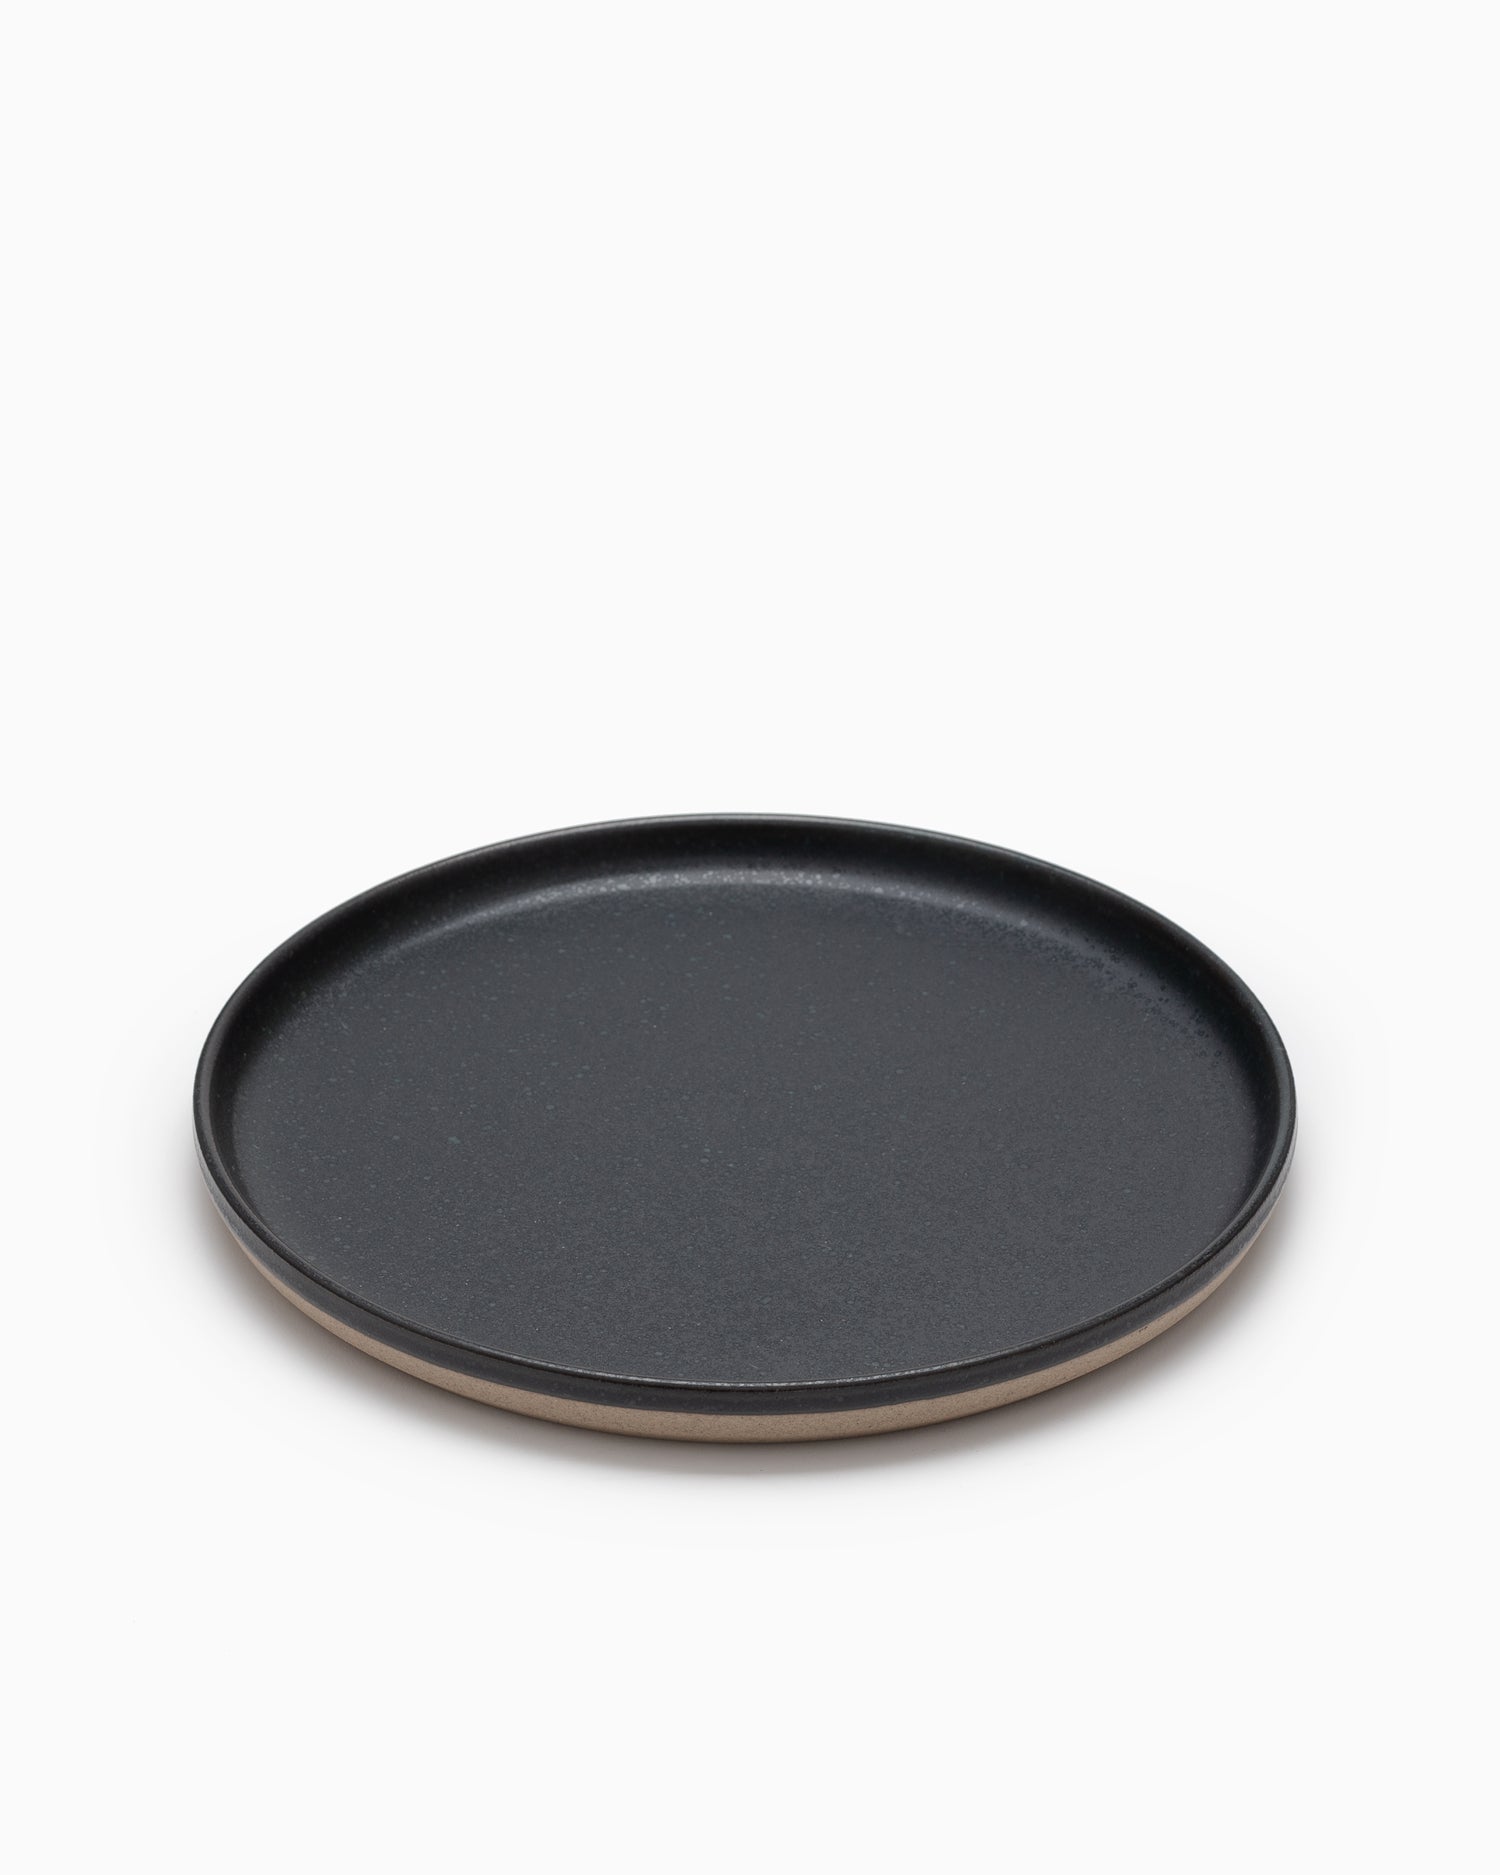 CLK-151 Medium Plate - Black